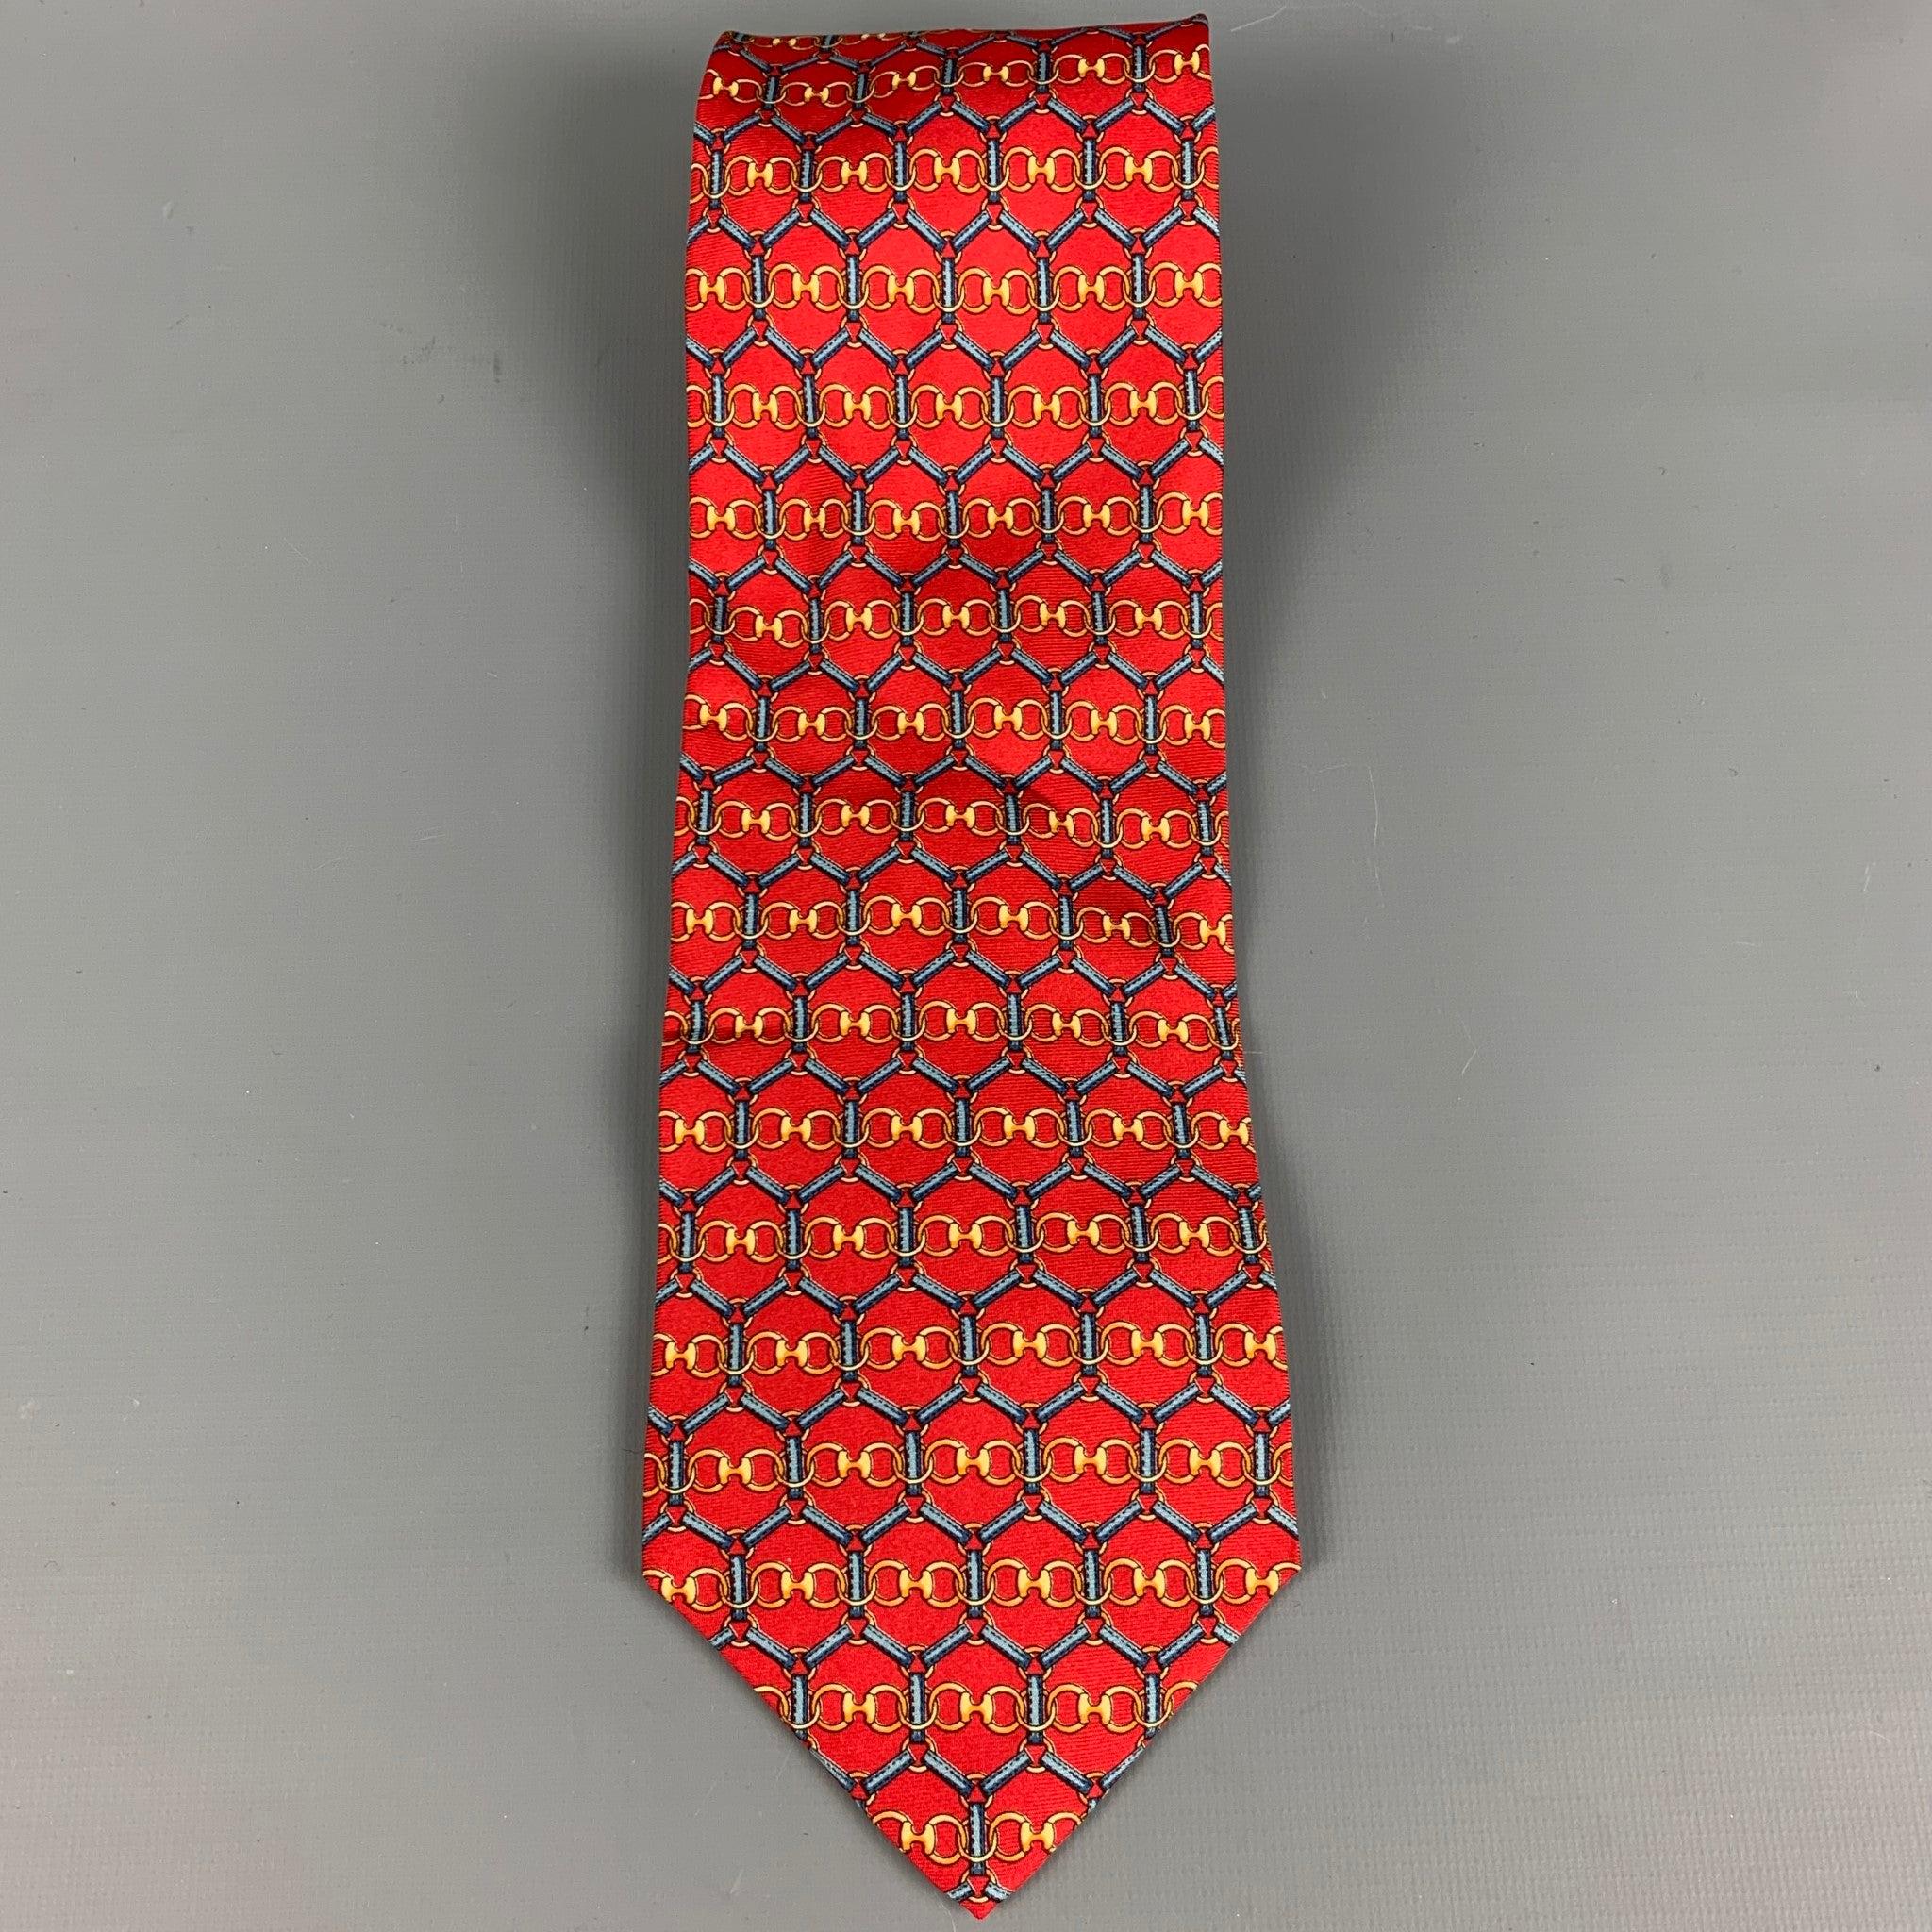 GUCCI
Cravate en soie rouge à motifs de maillons de chaîne multicolores. Fabriqué en Italie. Excellent état. 

Mesures : 
  Largeur : 3,5 pouces Longueur : 58 pouces 
  
  
 
Référence : 127788
Catégorie : Cravate
Plus de détails
    
Marque : 